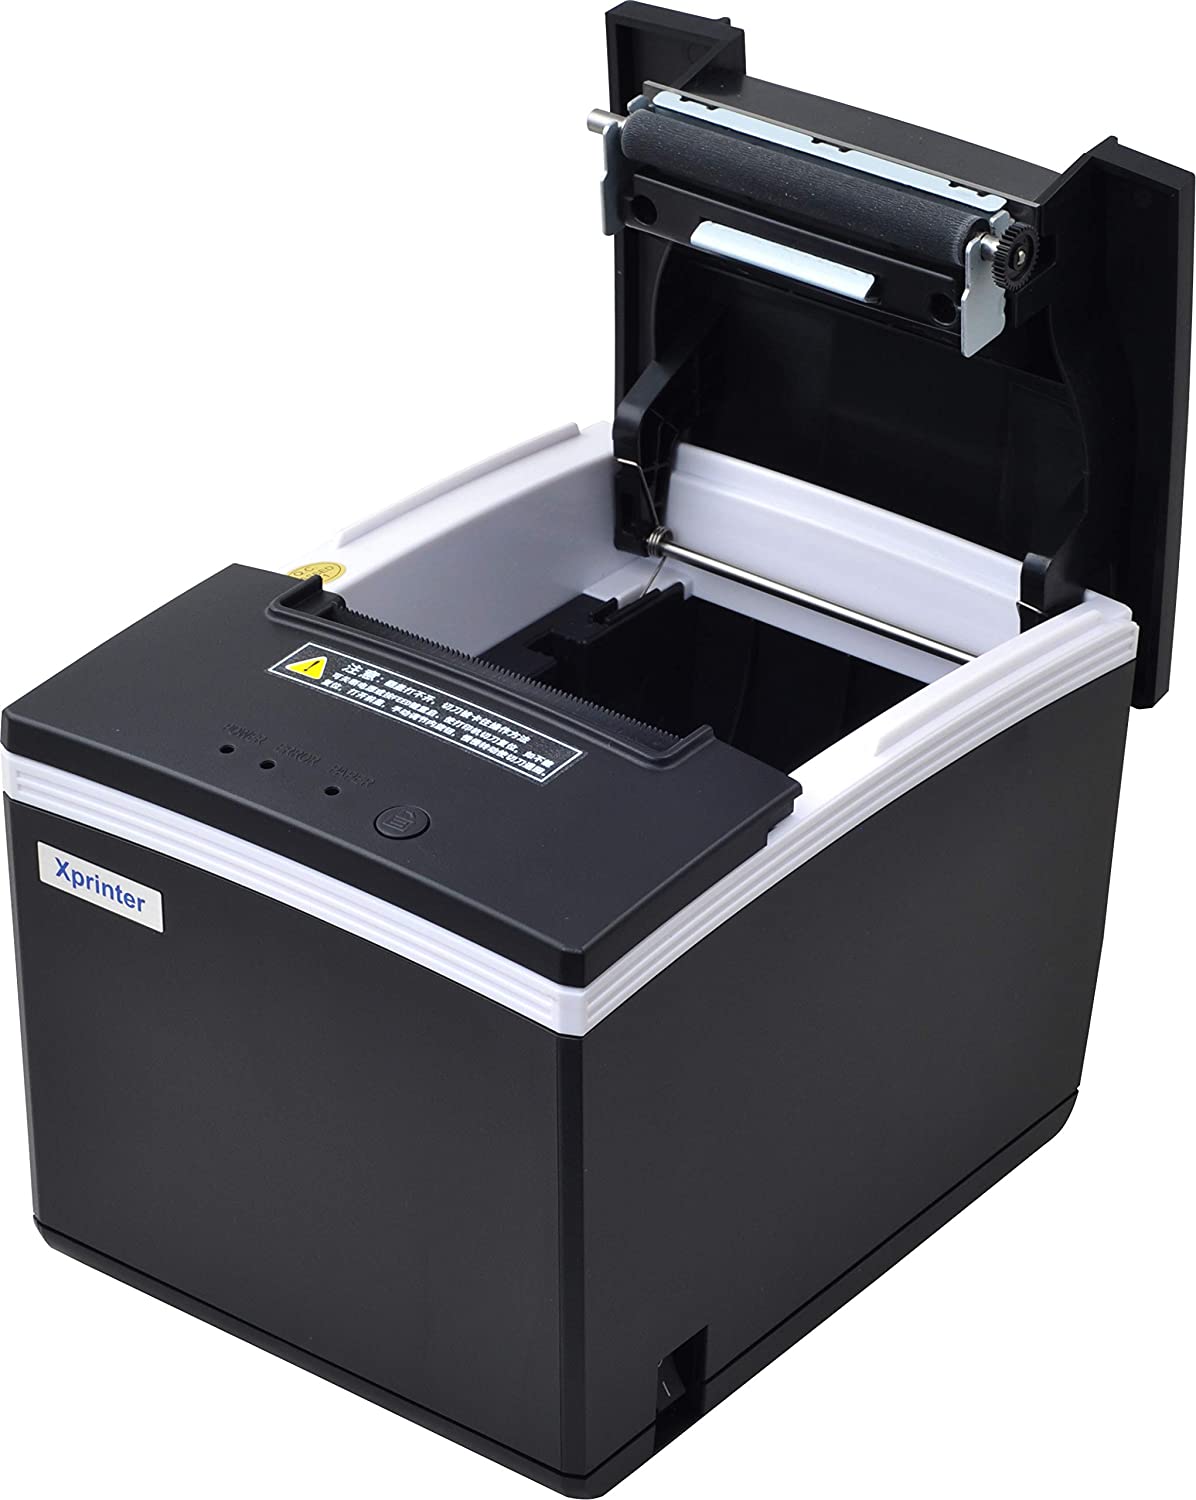 Xprinter Thermal Receipt Printer (XP-N260H)